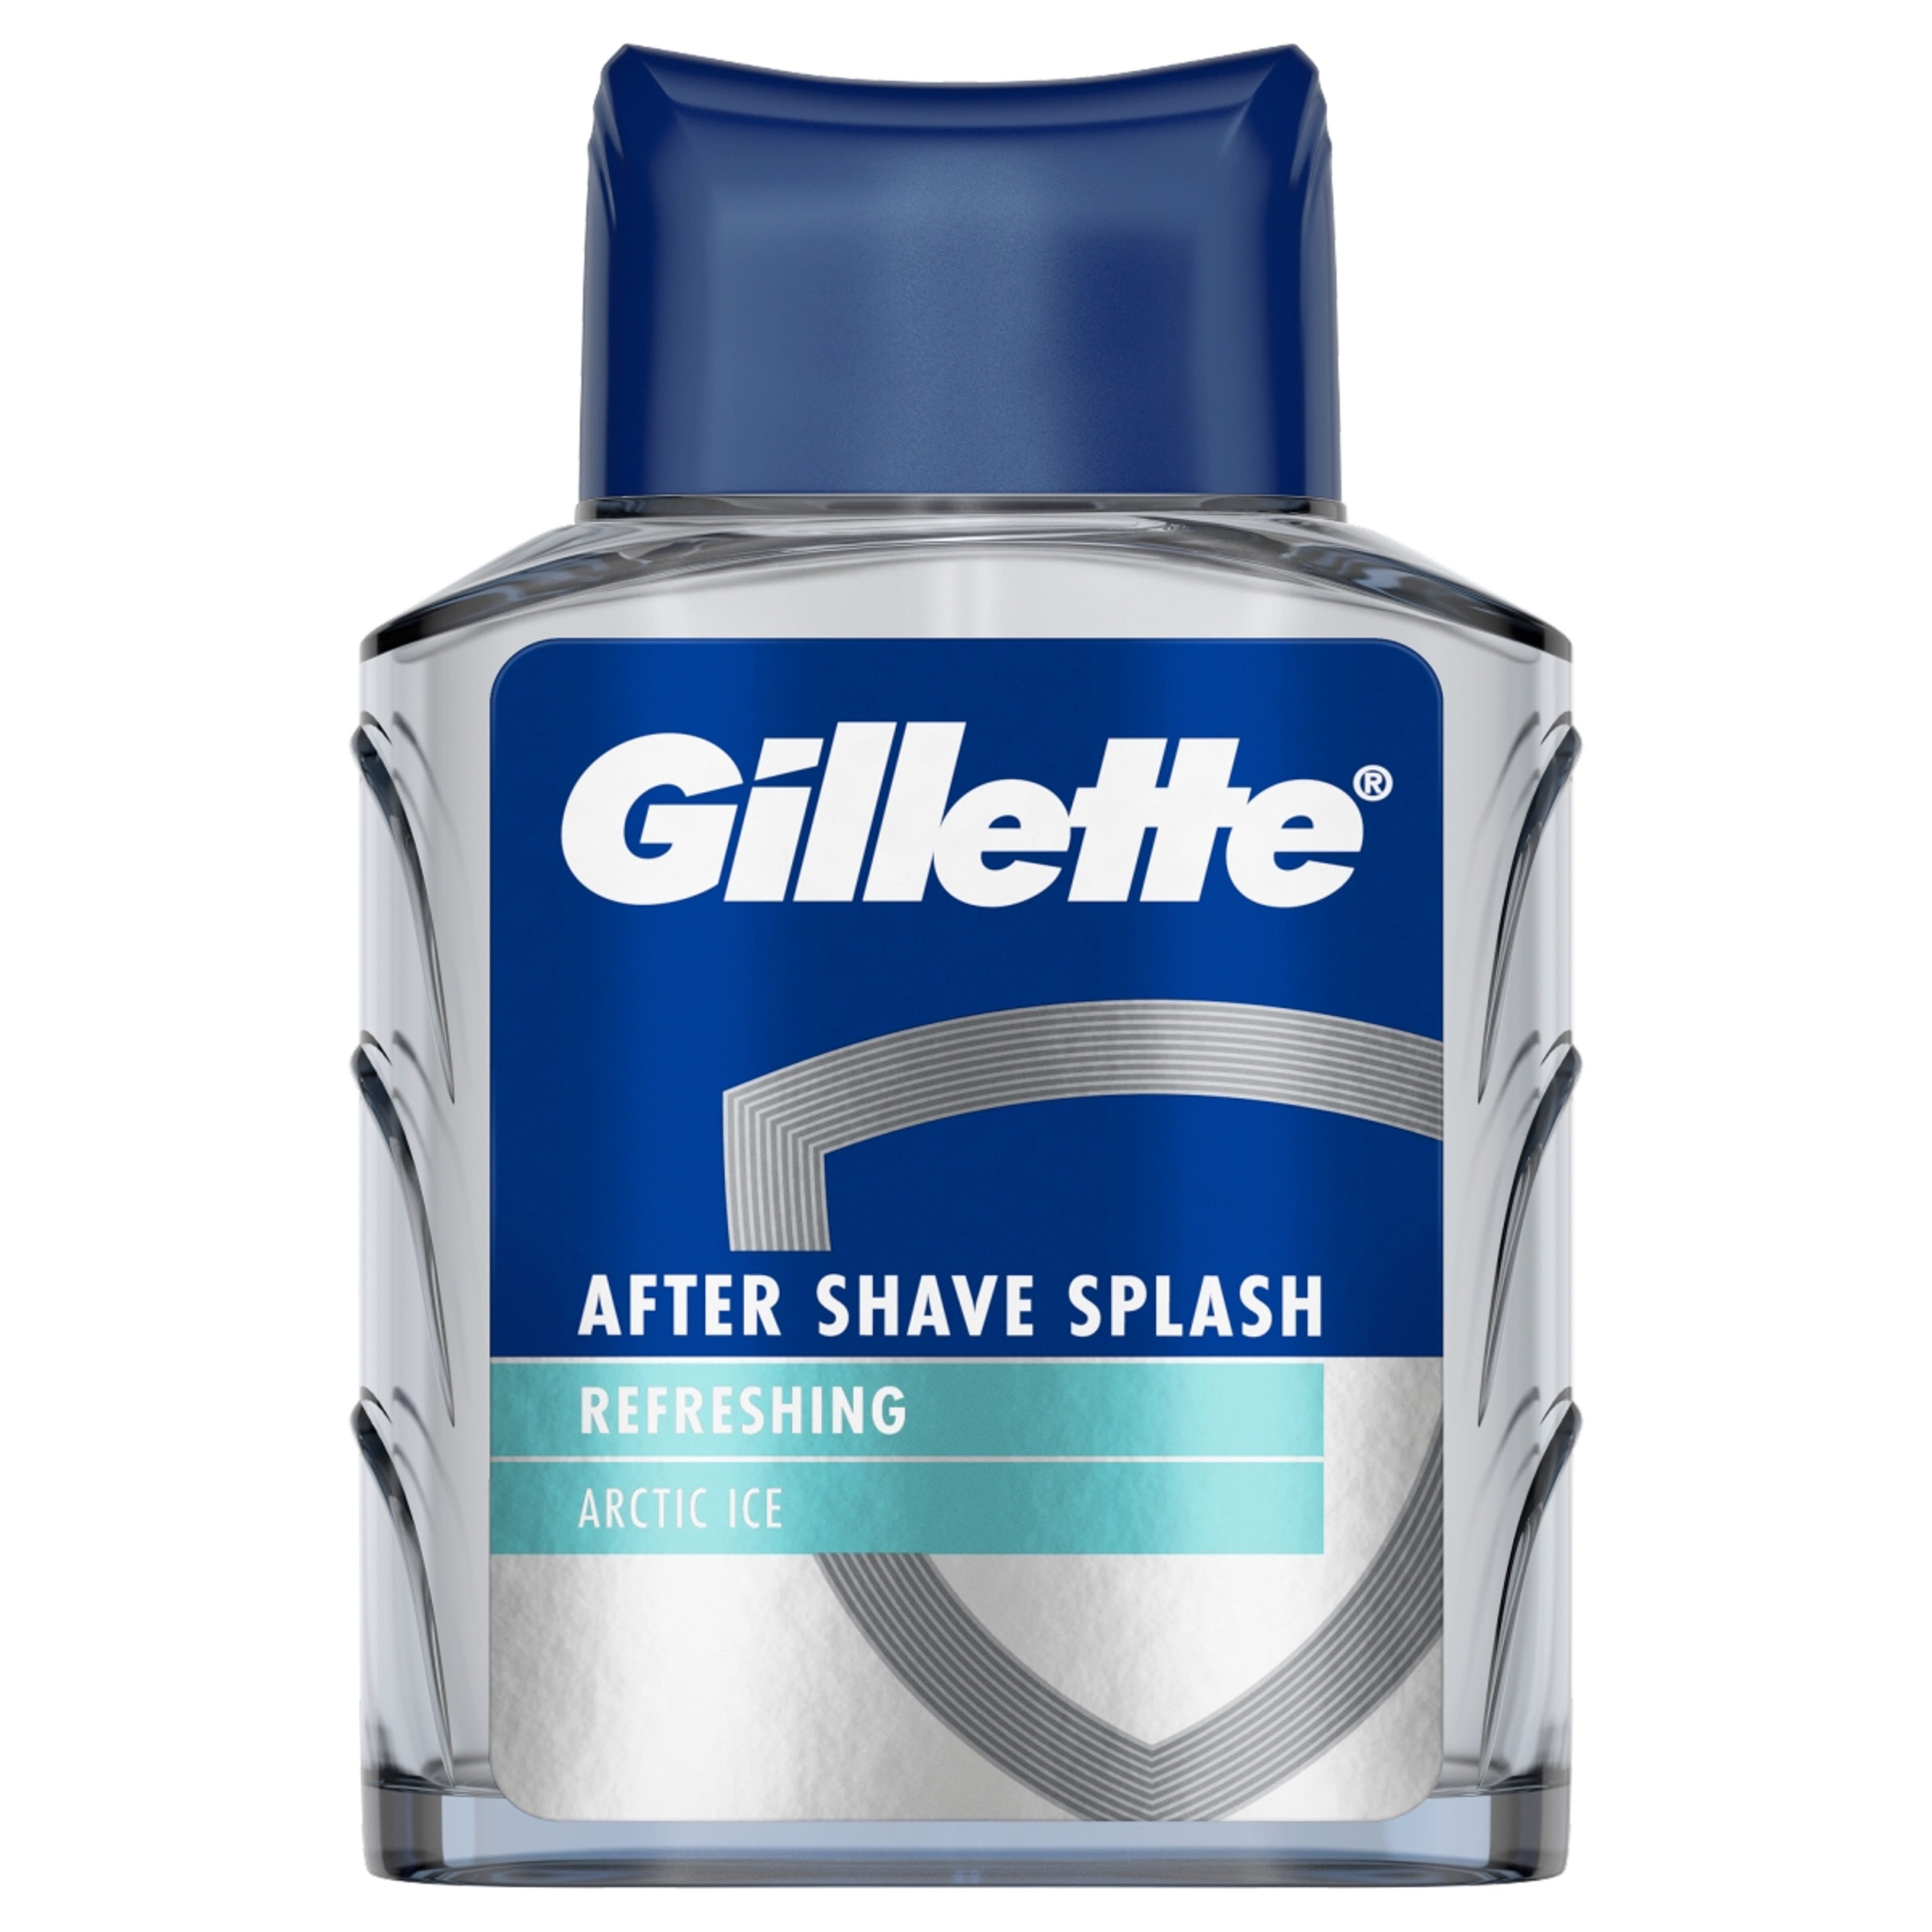 Gillette Series Arctic Ice Bold borotválkozás utáni arcszesz friss illattal - 100 ml